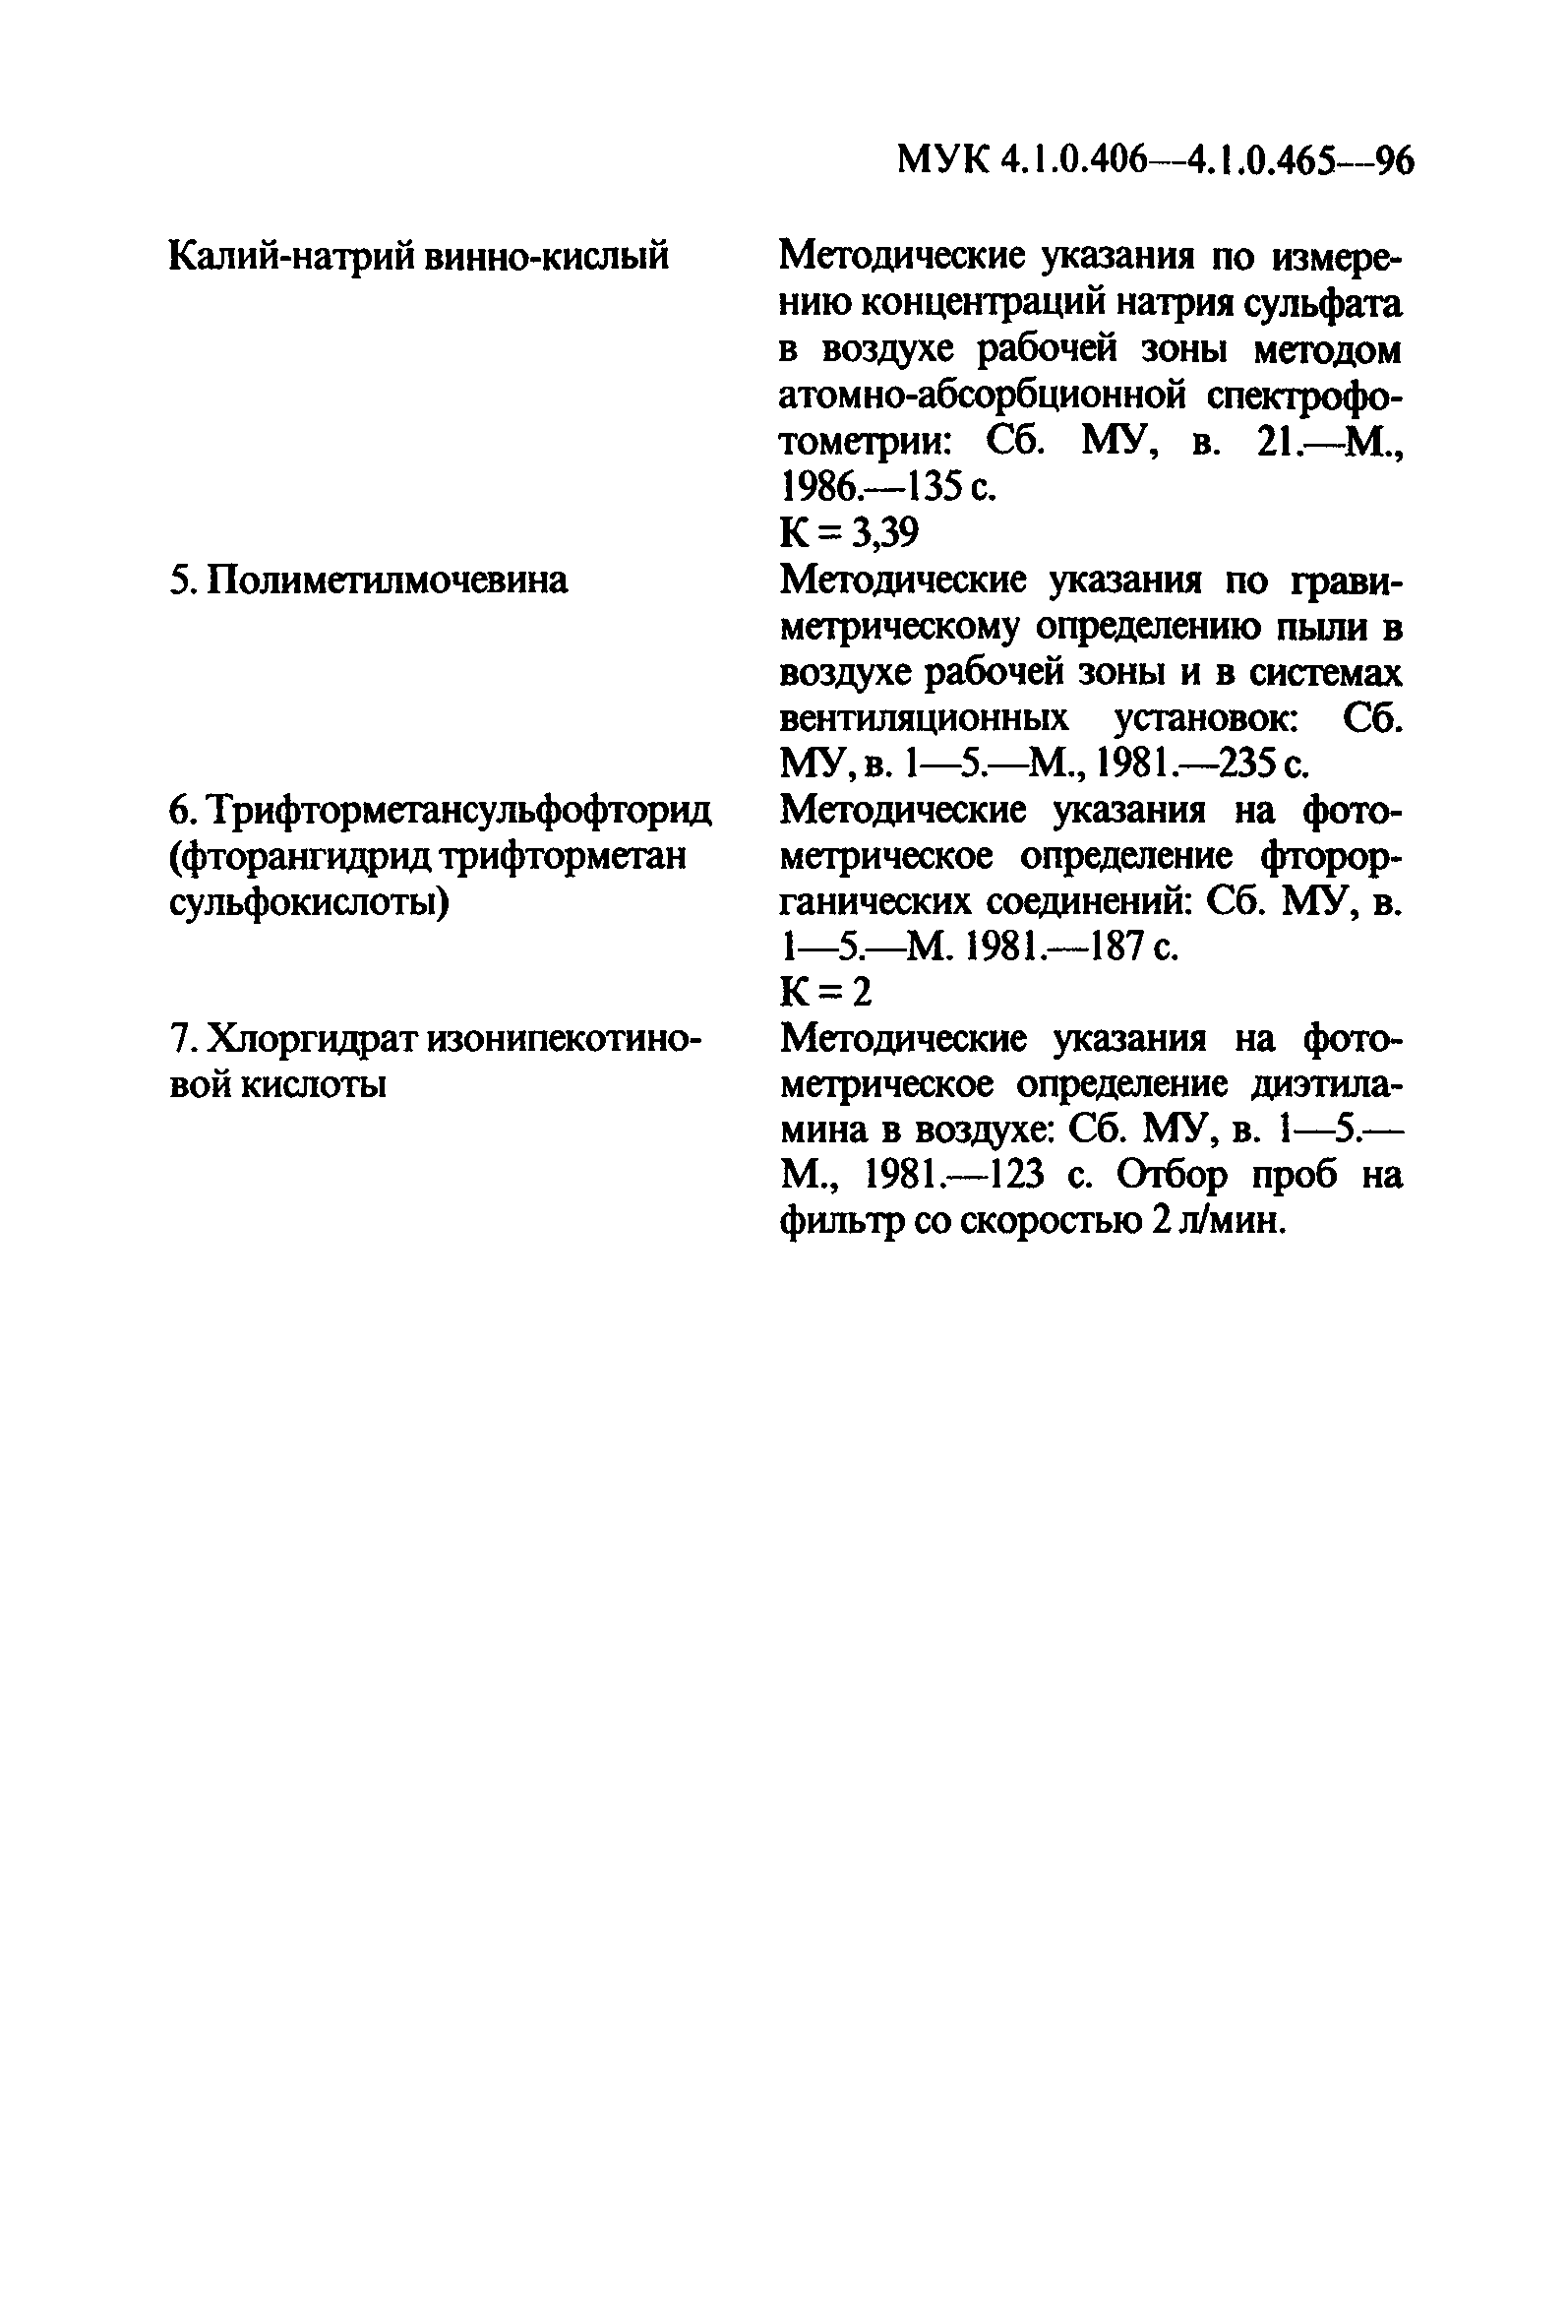 МУК 4.1.0.451-96